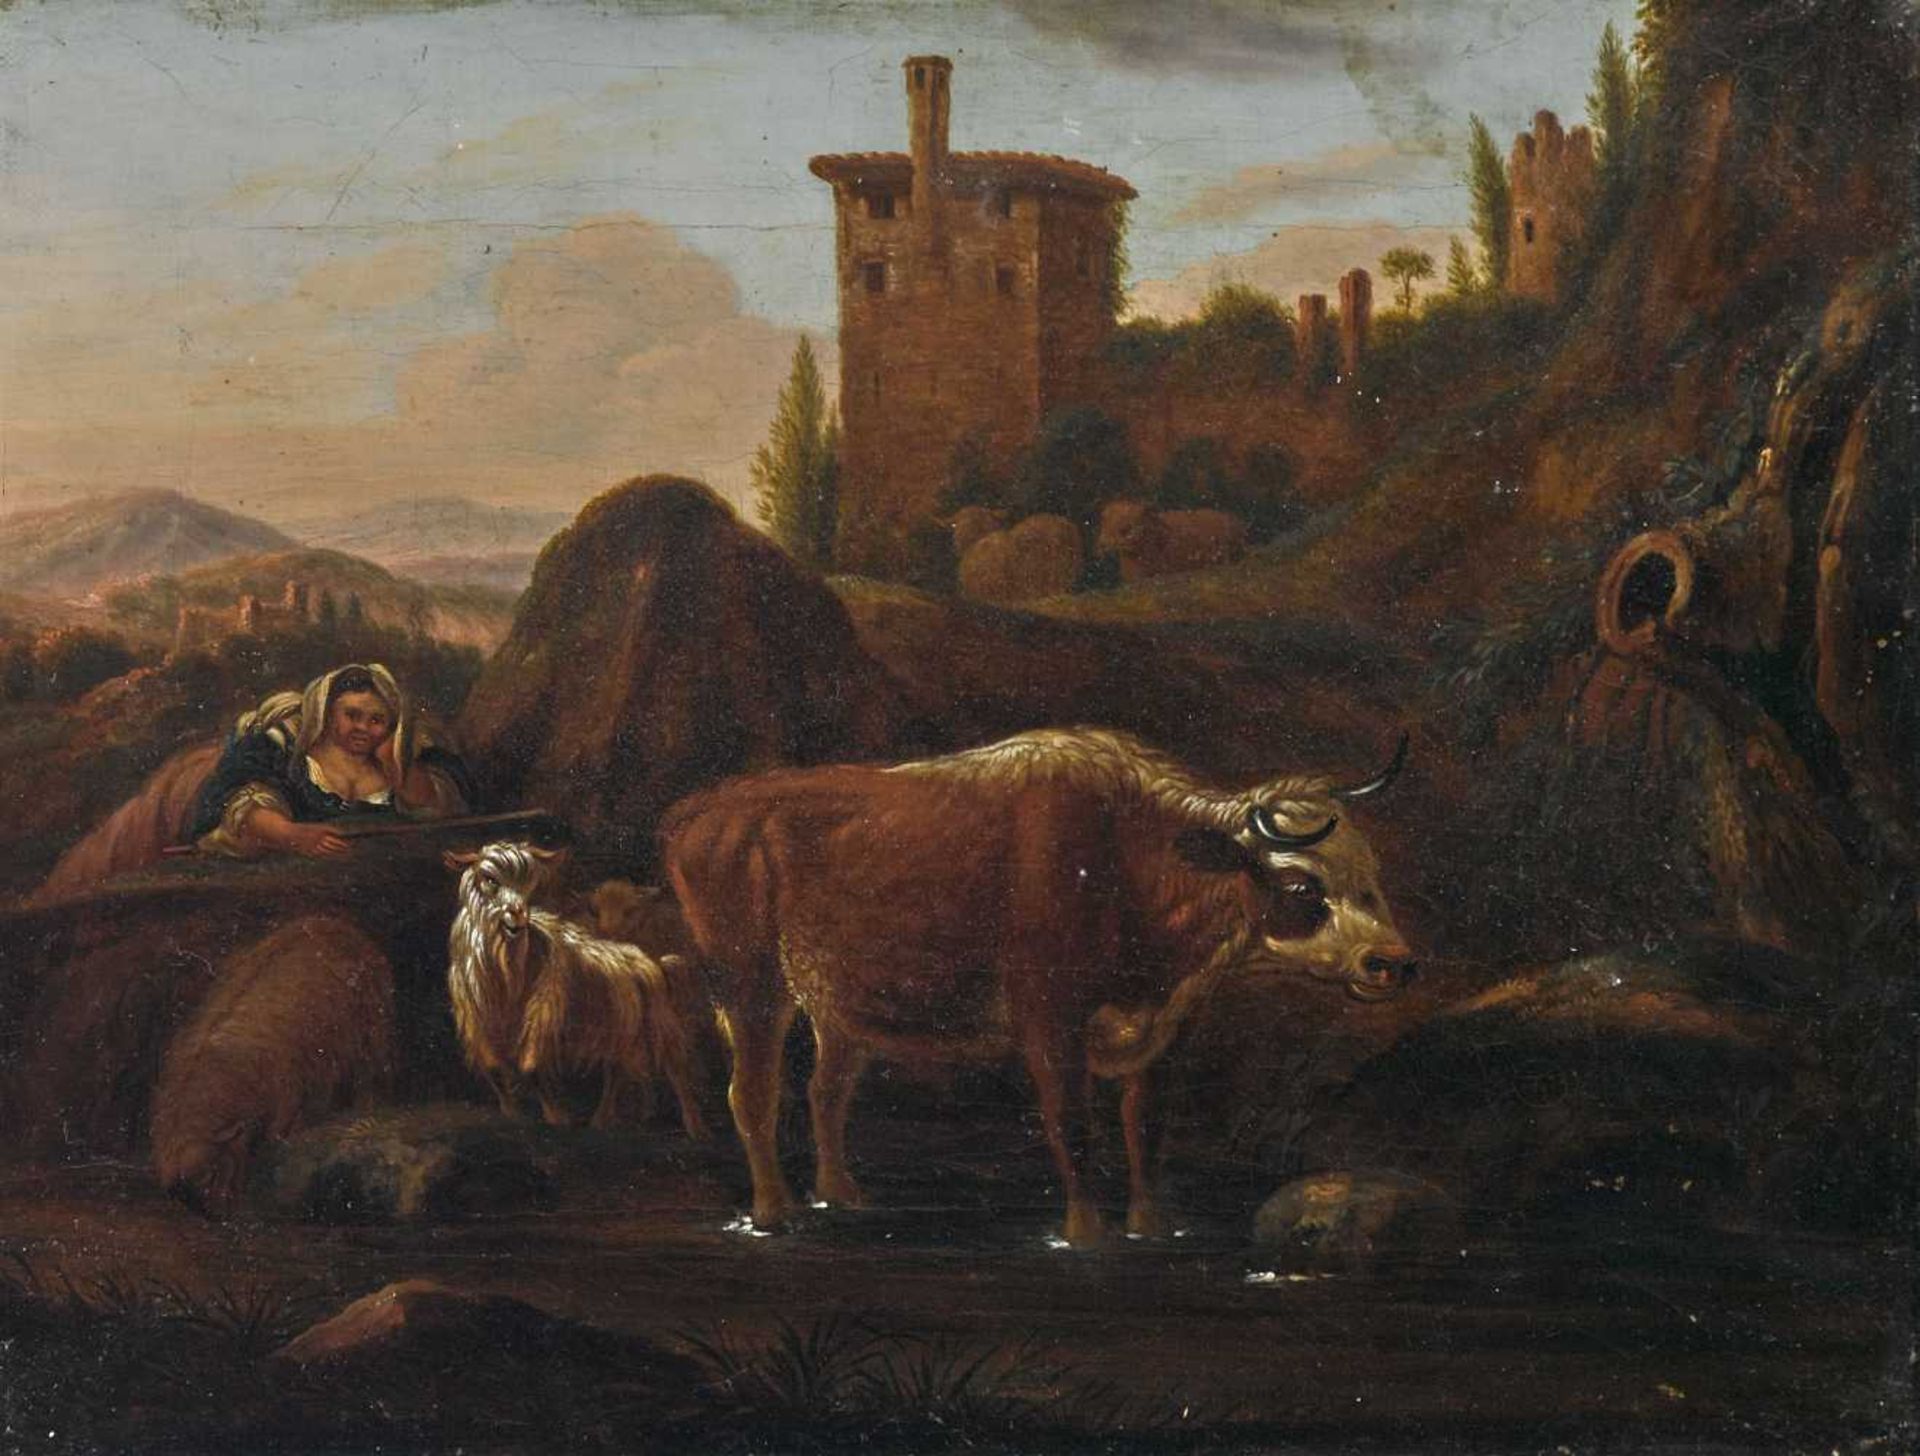 Roos, Johann Heinrich 1631 Reipoltskirchen (Pfalz) - 1685 Frankfurt a. M., Art des Hirtin mit Vieh